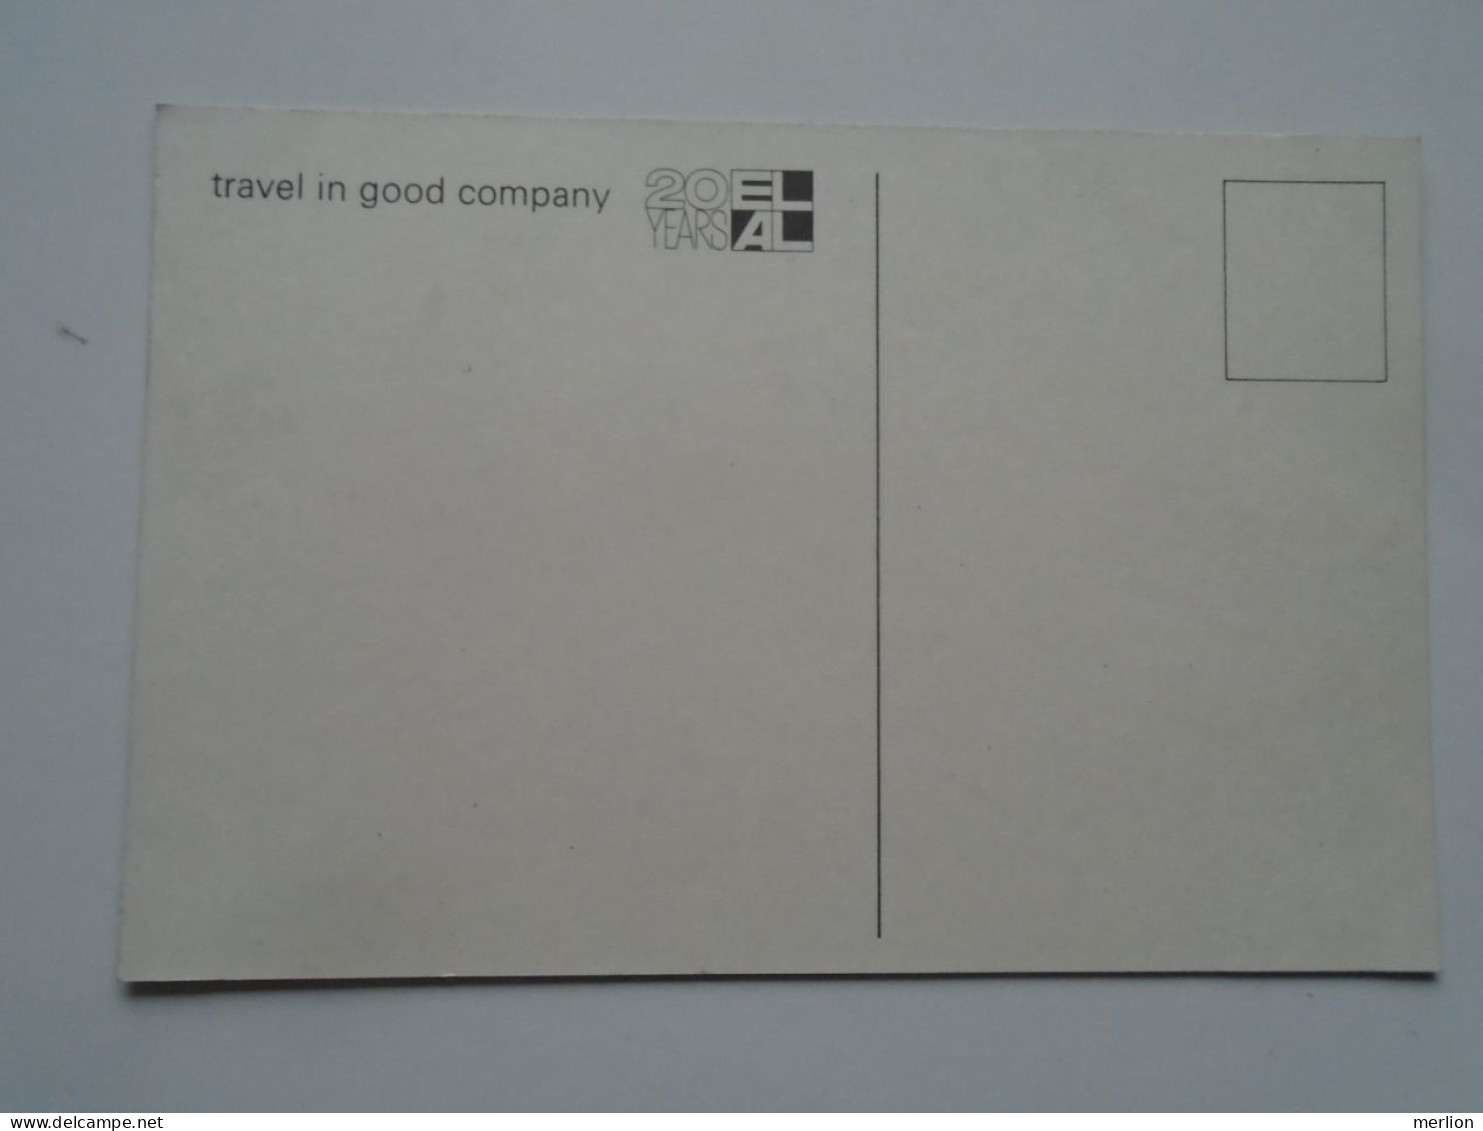 D201723    Israel Airlines  - EL AL  ELAL  20 Years -travel In Good Company   Postcard - 1946-....: Moderne